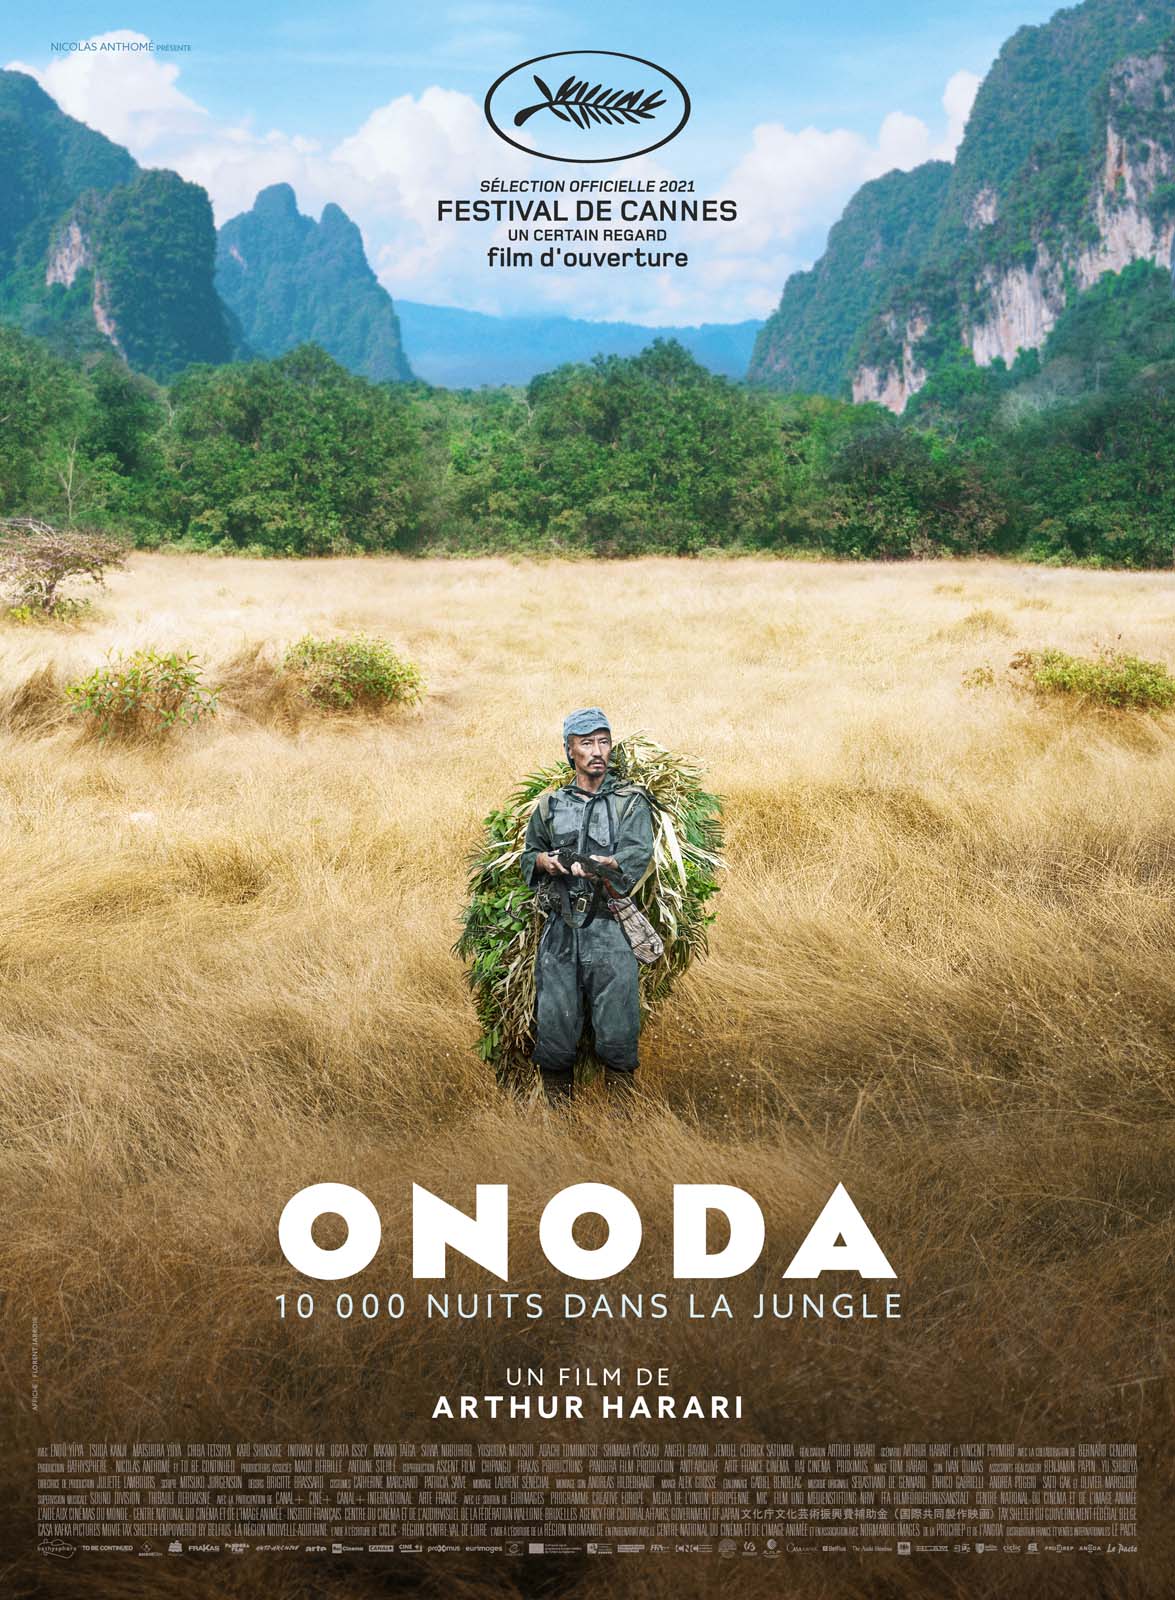 Top films 2021 - Onoda, 10 000 nuits dans la jungle, de Arthur Harari